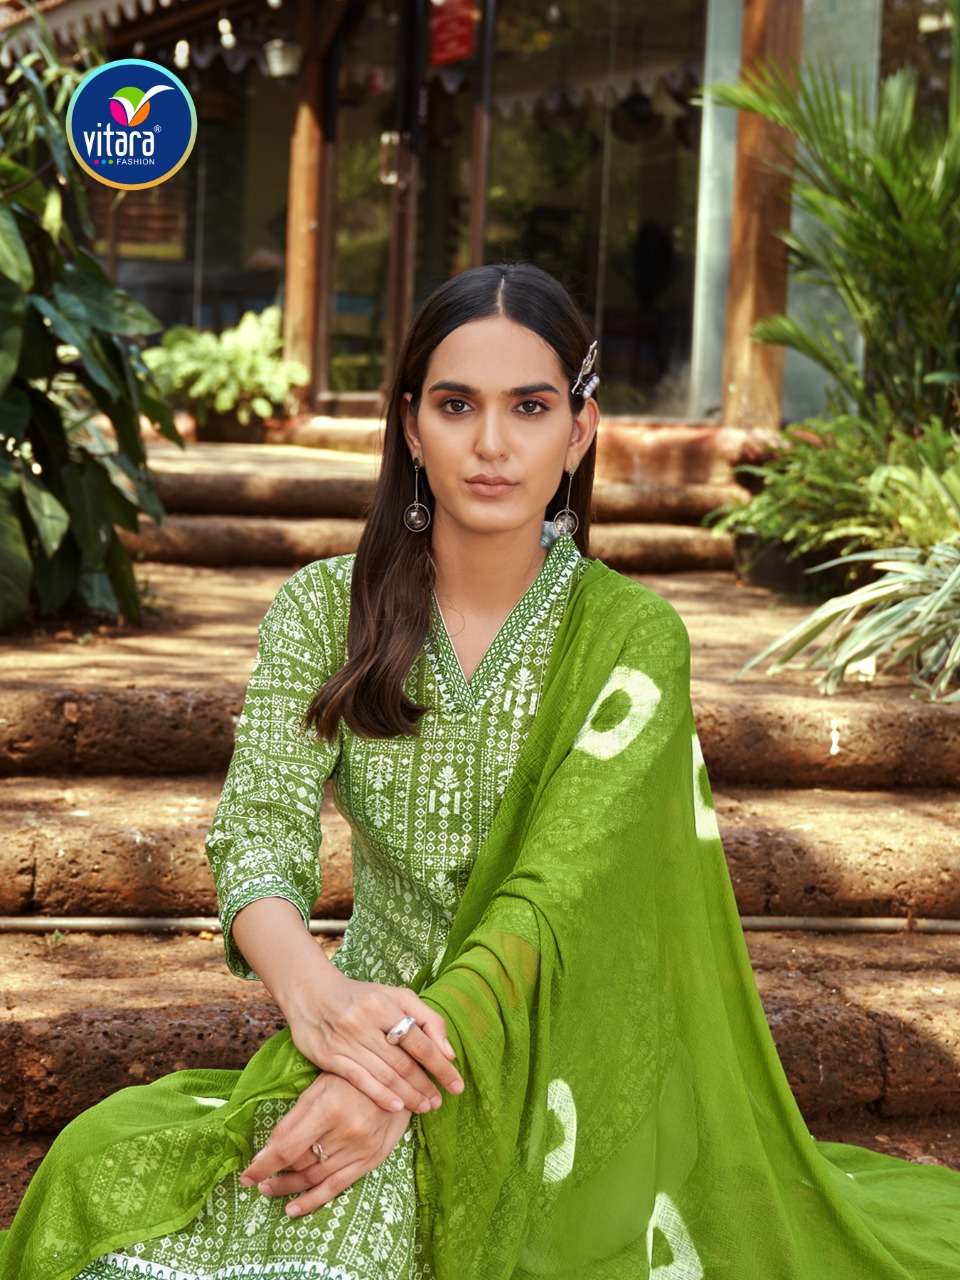 vitara fashion by victoria reyon fabric ready made salwar kameez online wholesaler surat 